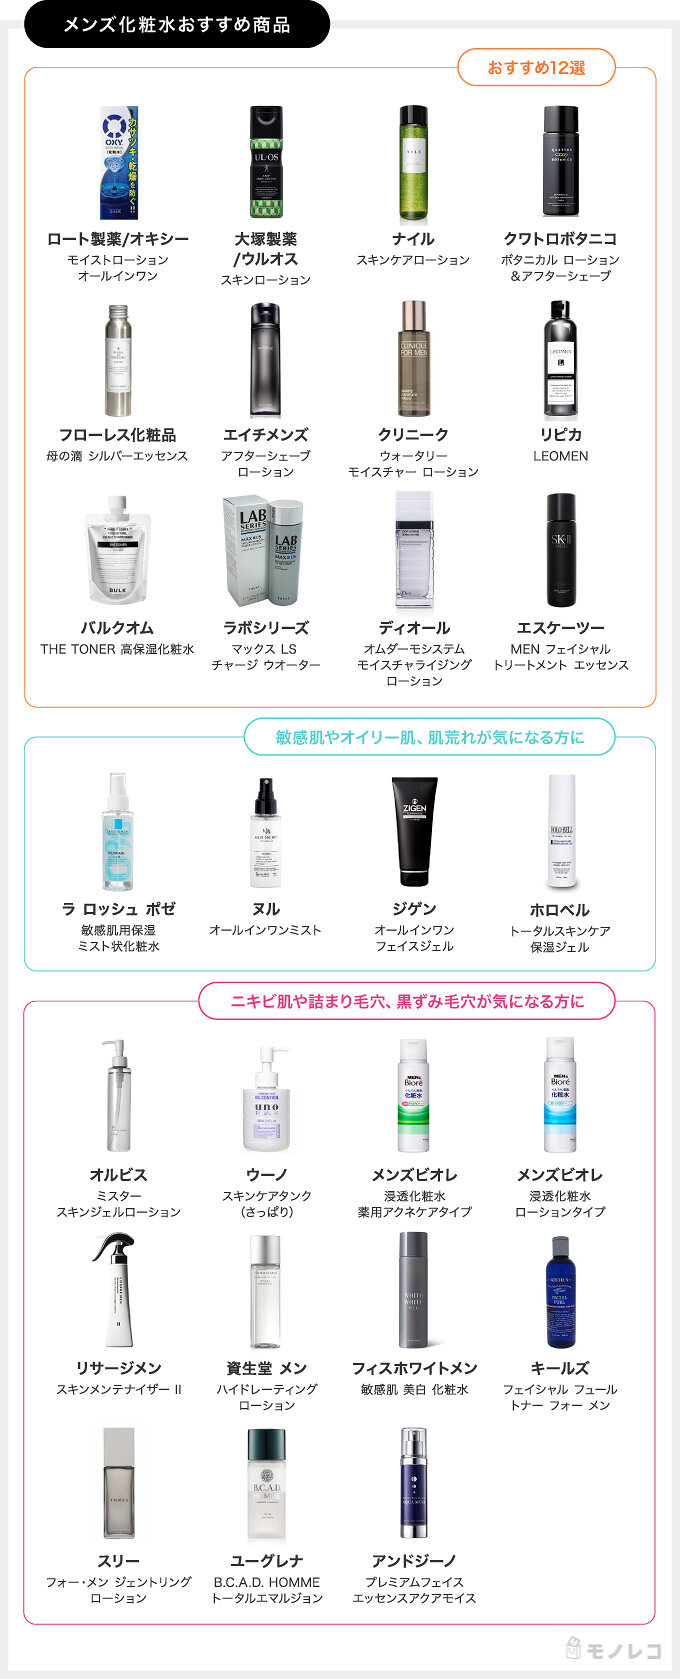 メンズ化粧水おすすめ27選 メンズ美容家が肌の悩みや肌質別の選び方を解説 モノレコ By Ameba